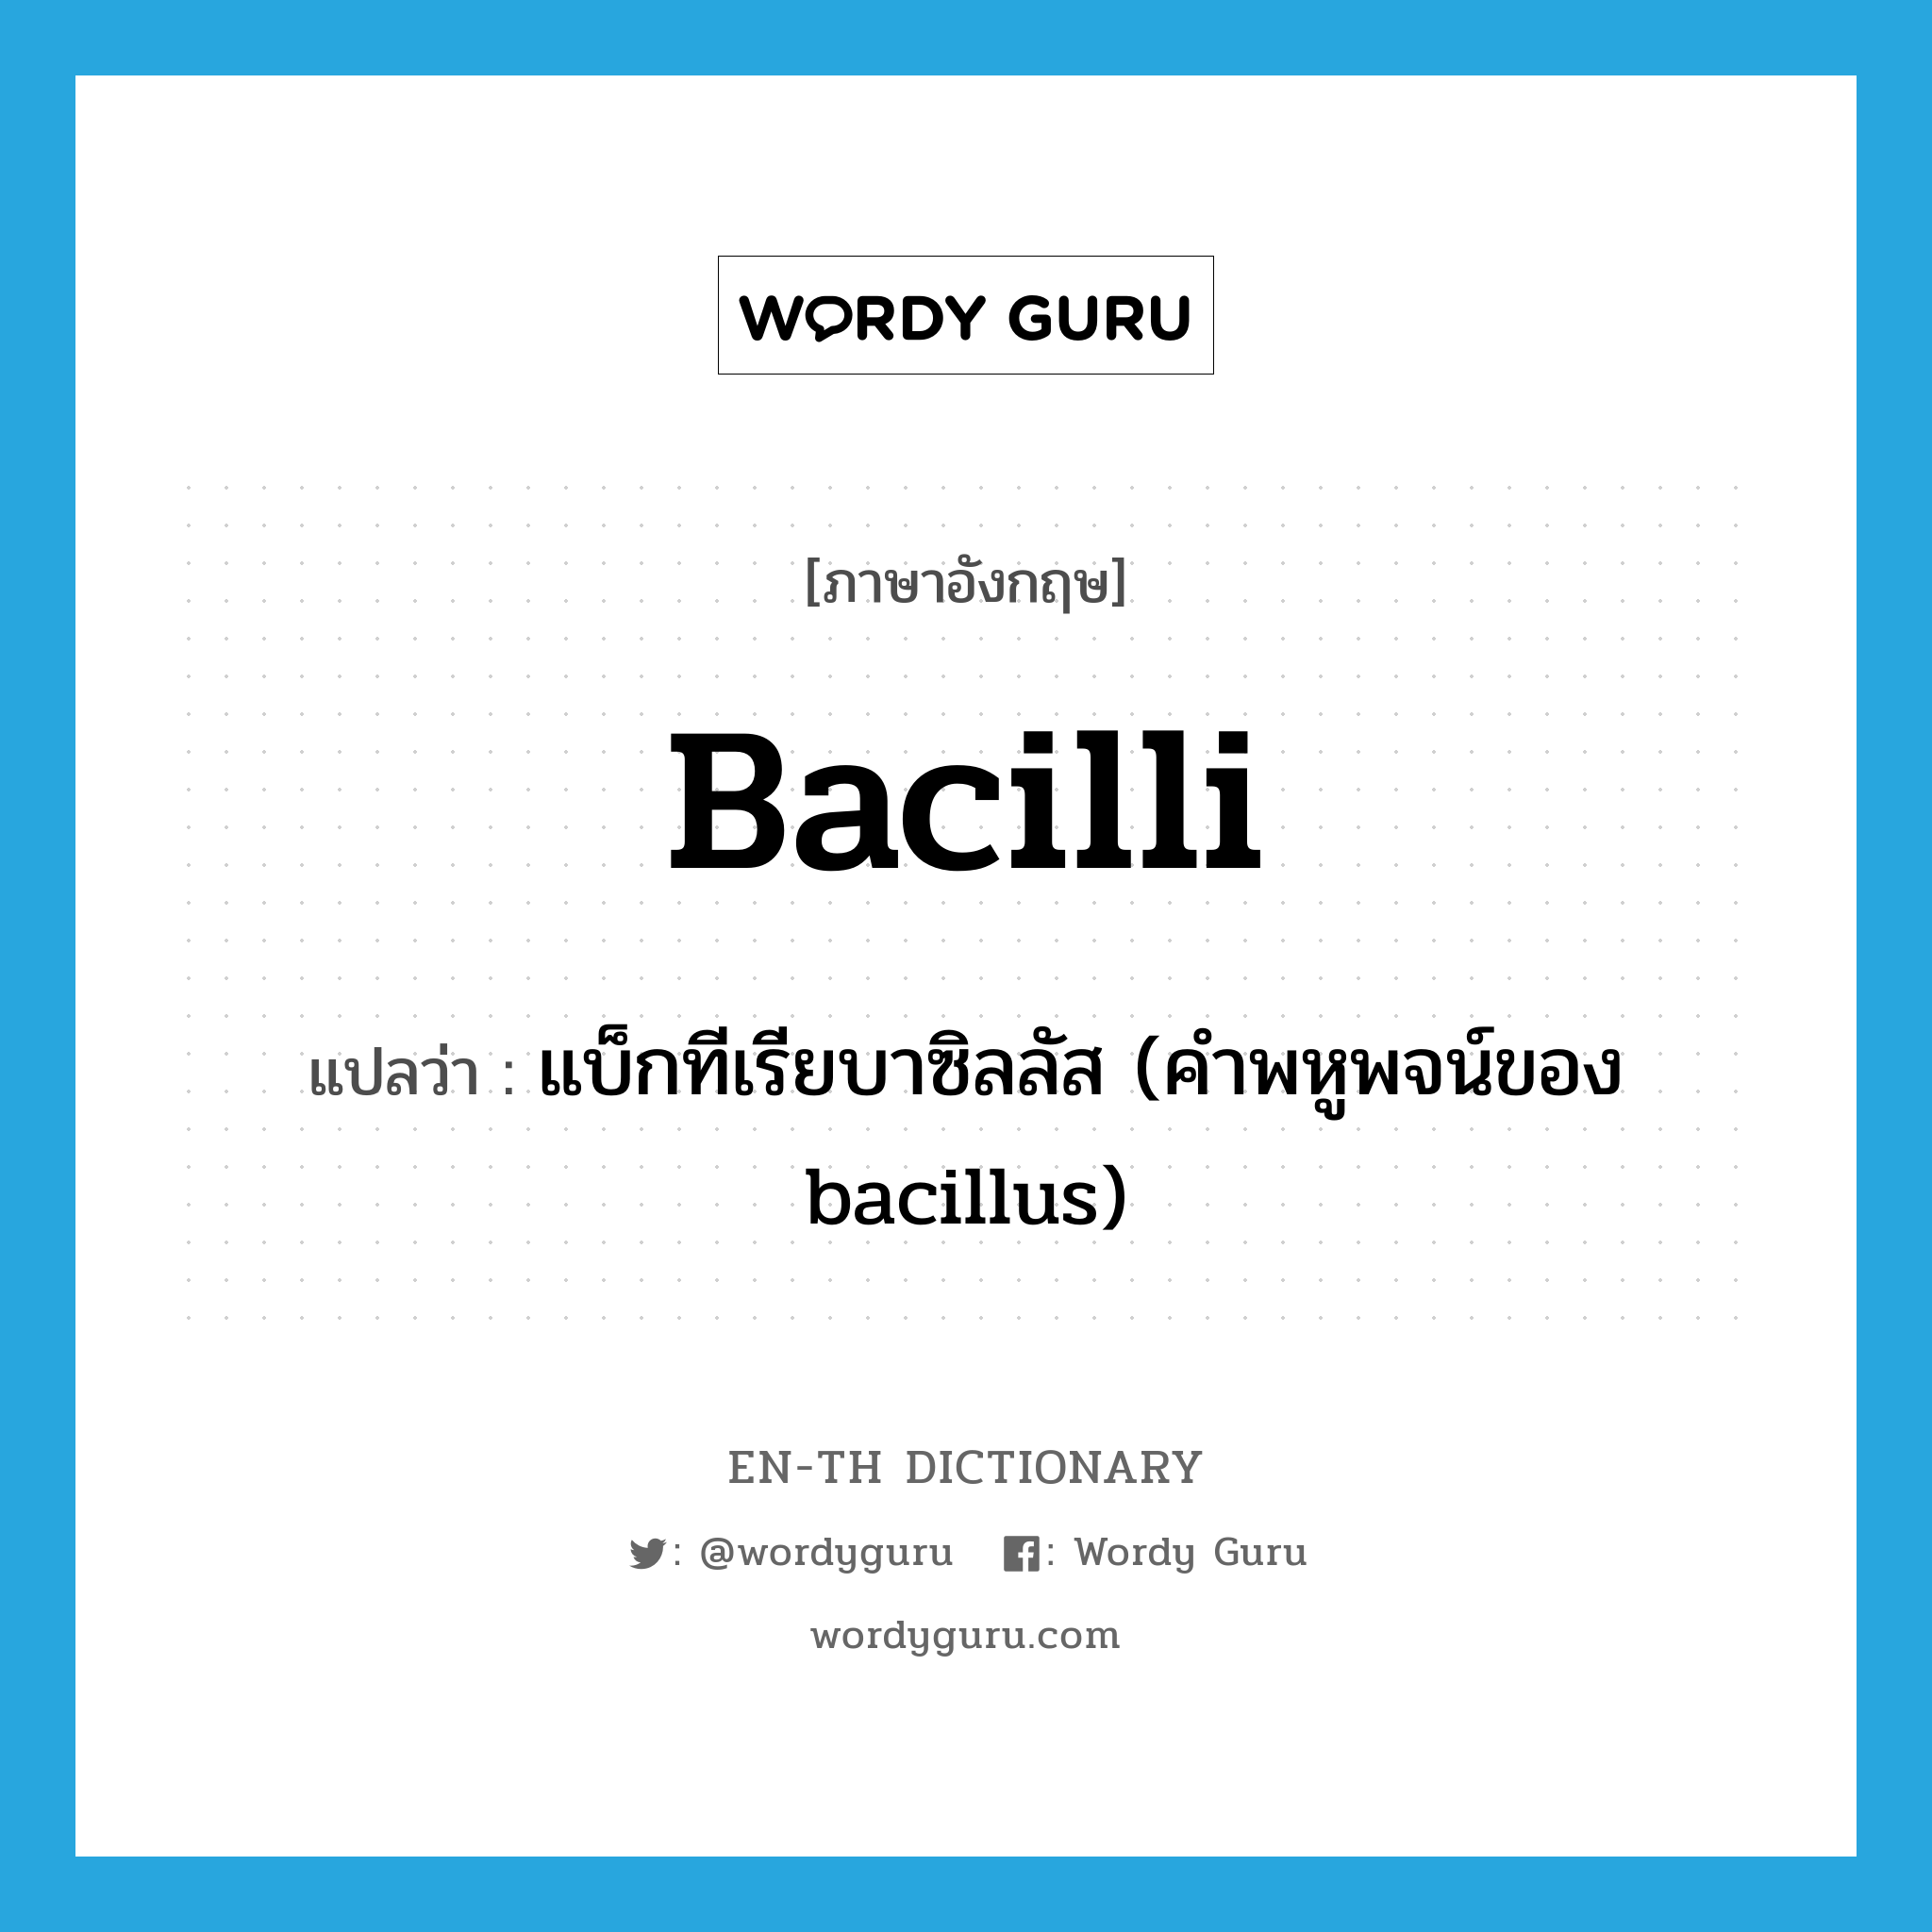 แบ็กทีเรียบาซิลลัส (คำพหูพจน์ของ bacillus) ภาษาอังกฤษ?, คำศัพท์ภาษาอังกฤษ แบ็กทีเรียบาซิลลัส (คำพหูพจน์ของ bacillus) แปลว่า bacilli ประเภท N หมวด N